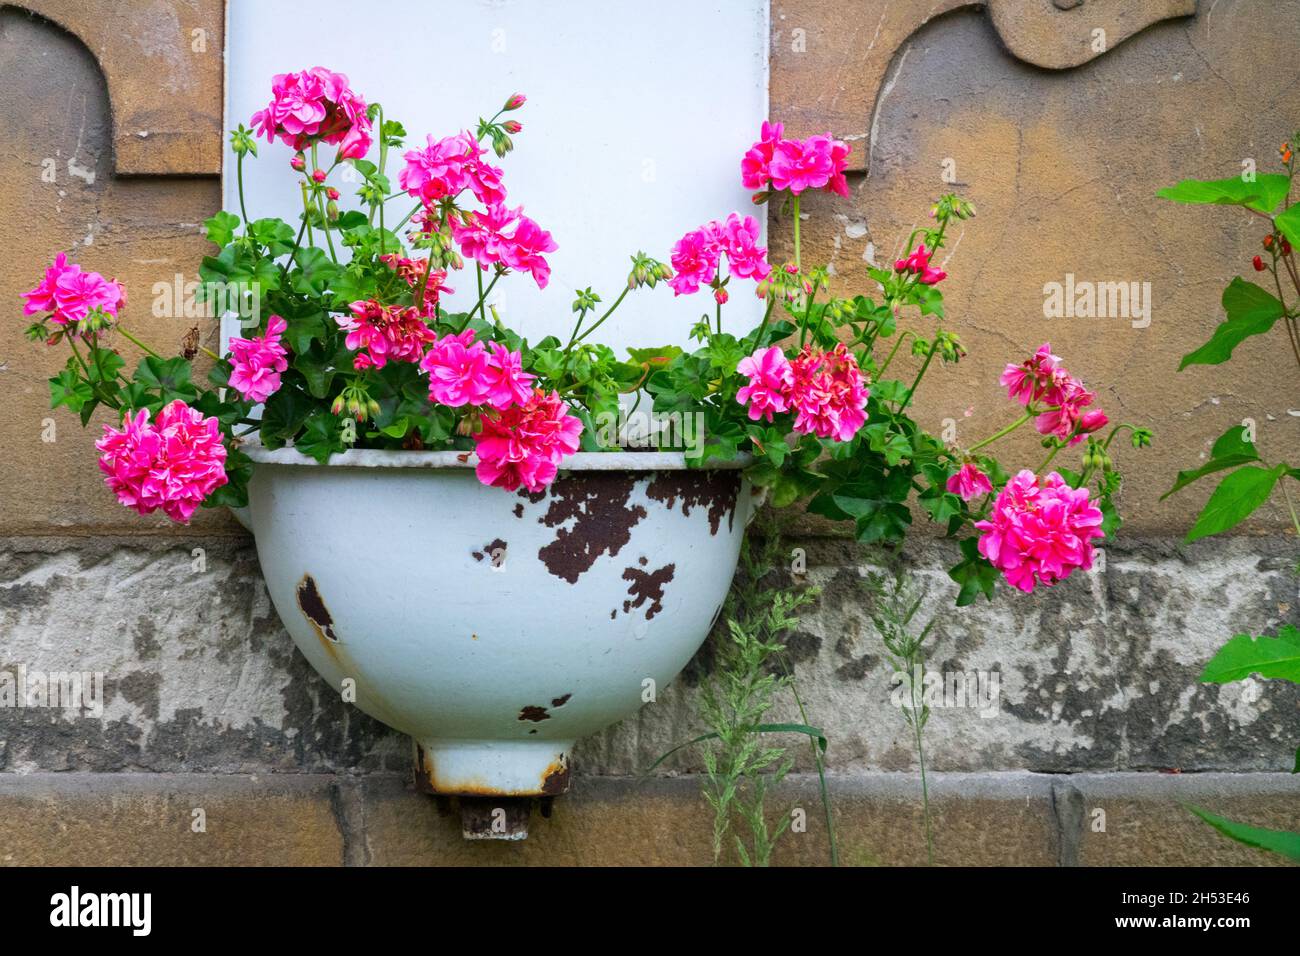 Pink Pelargonium crece en viejo fregadero de hierro fundido Foto de stock